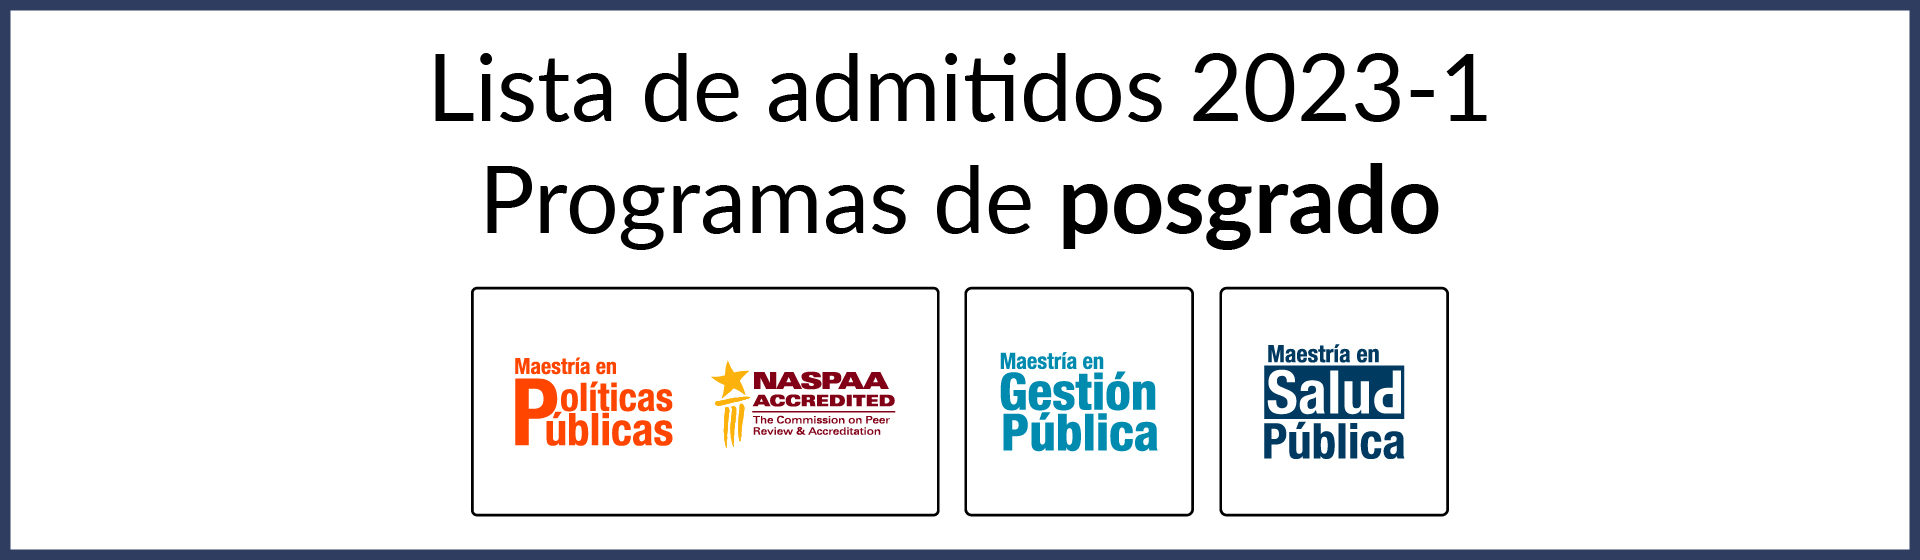 LISTA DE ADMITIDOS PARA POSGRADOS 2023-1